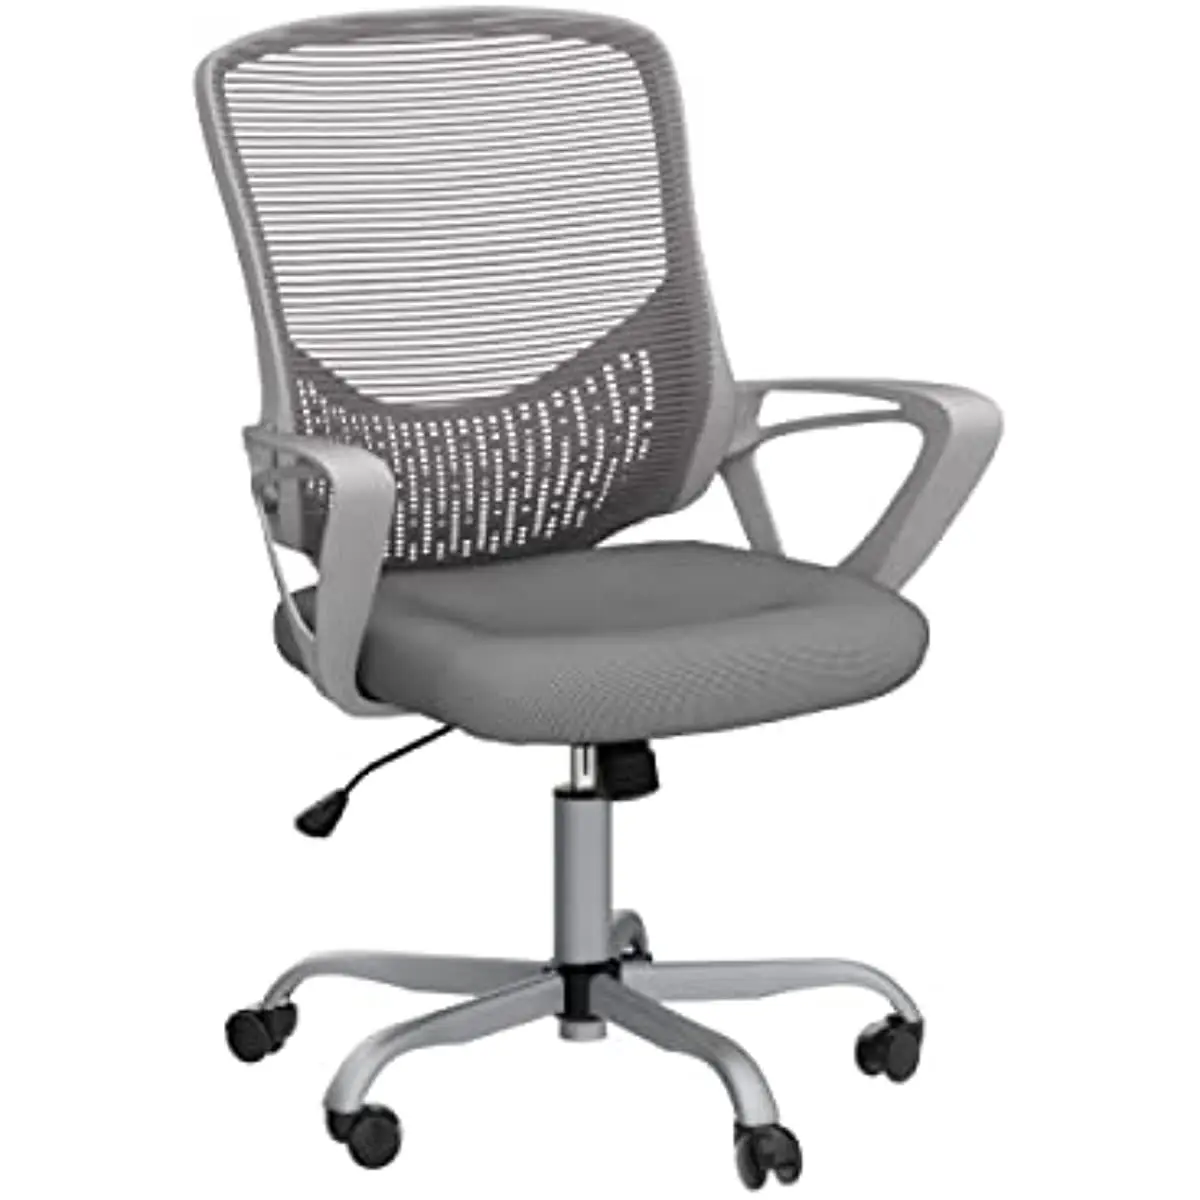 

Кресло для дома и офиса, эргономичное компьютерное кресло, Сетчатое вращающееся кресло со средней спинкой и регулируемой высотой, с подлоко...